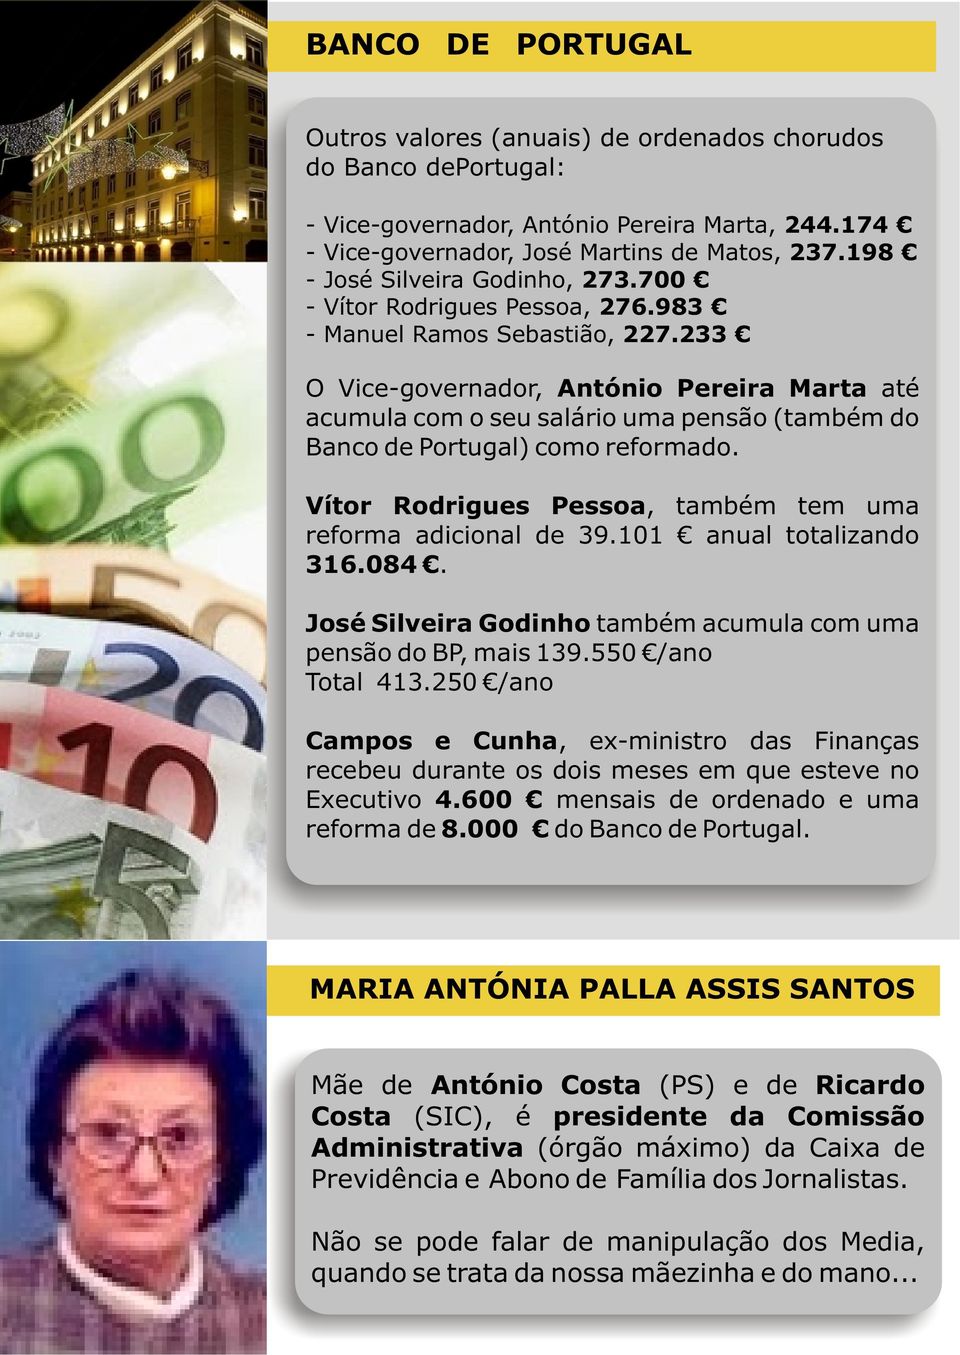 233 O Vice-governador, António Pereira Marta até acumula com o seu salário uma pensão (também do Banco de Portugal) como reformado. Vítor Rodrigues Pessoa, também tem uma reforma adicional de 39.